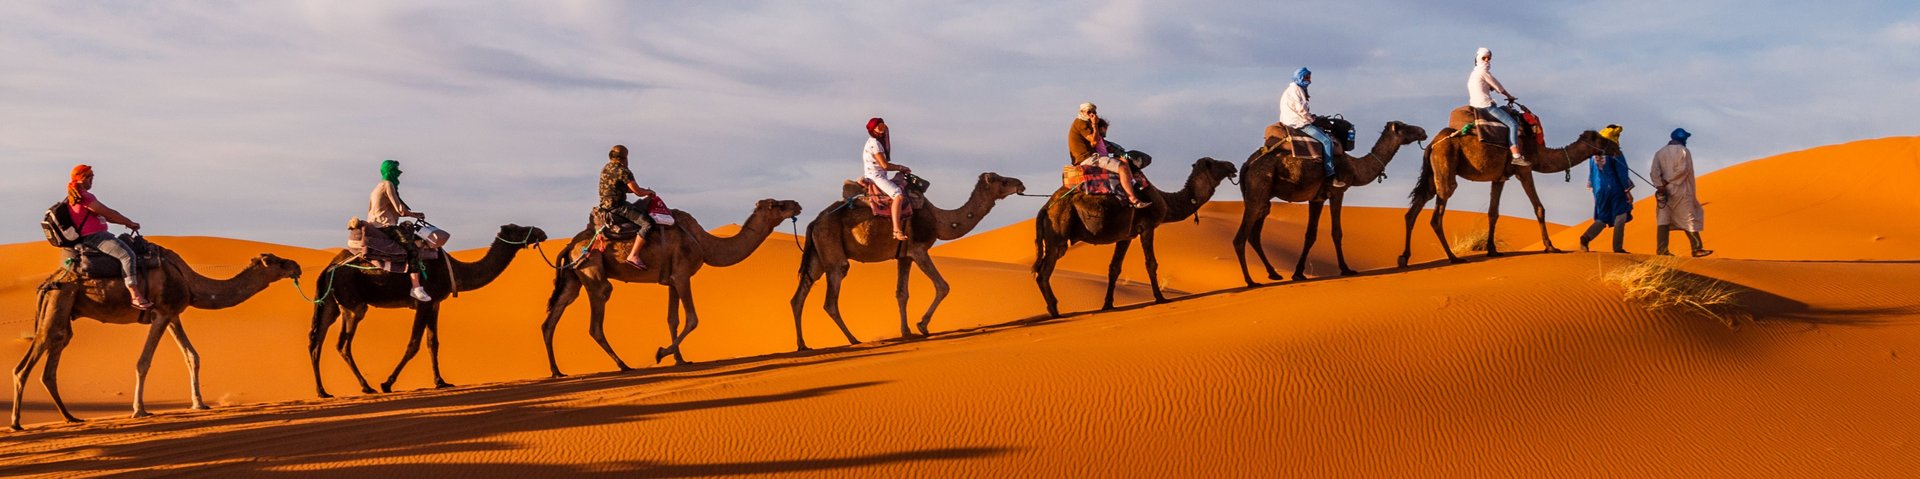 Karawane mit mehreren berittenen Kamelen in der Sahara-Wüste in Marokko